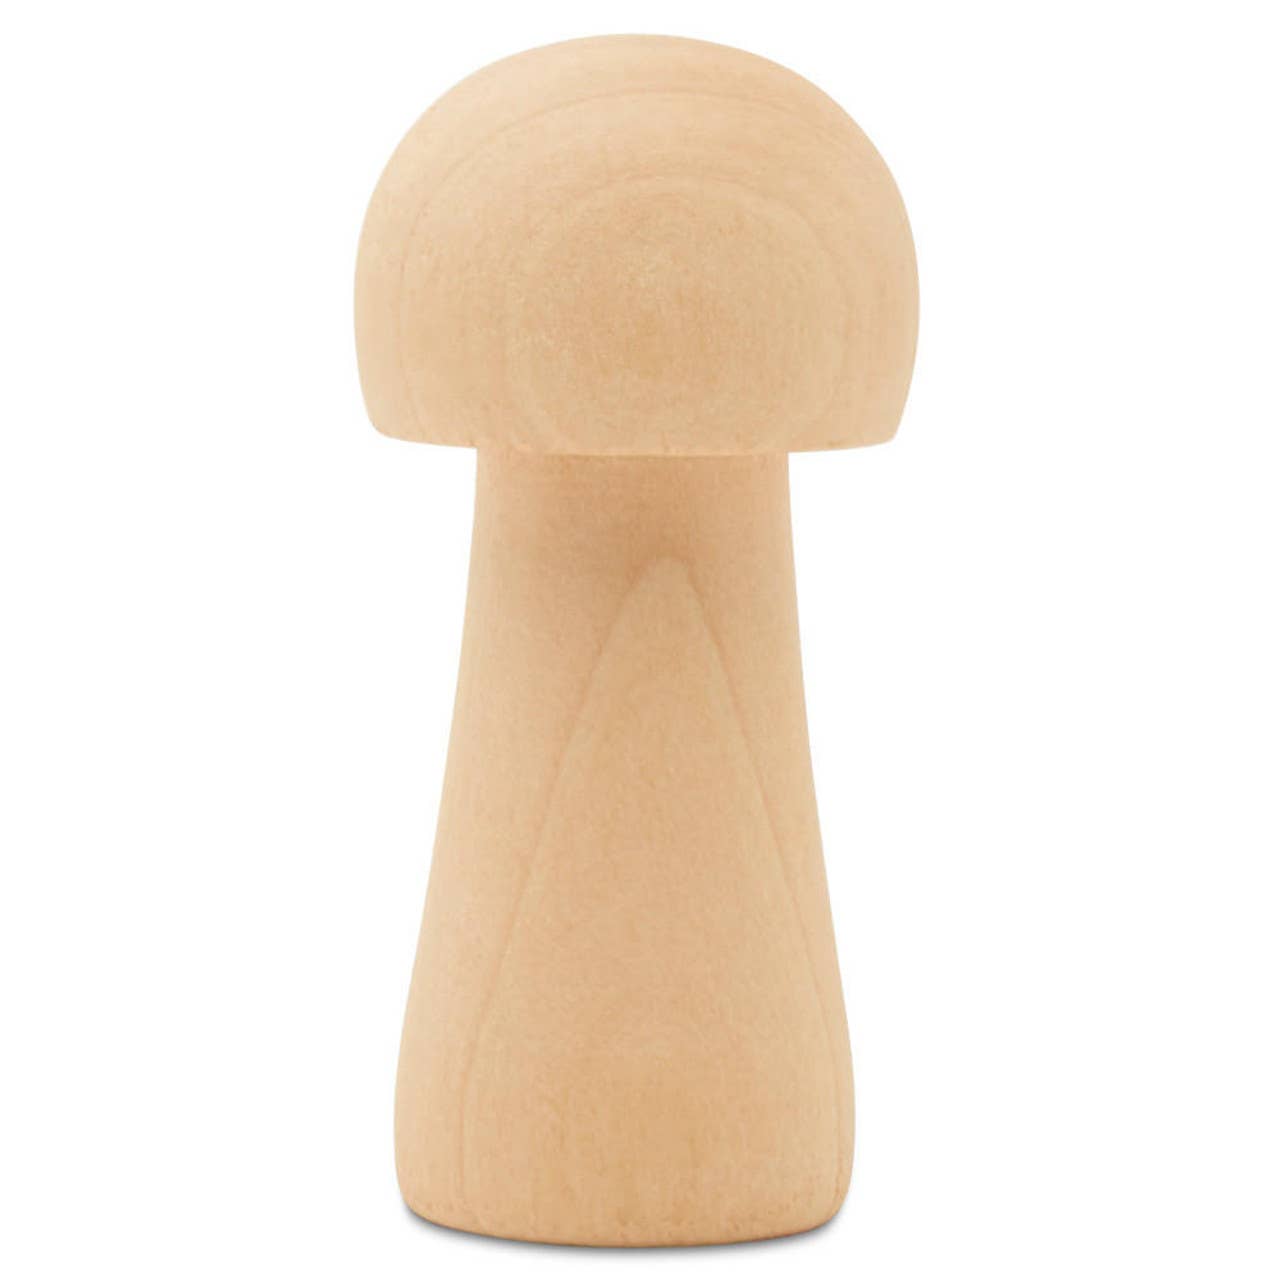 Wooden Mushroom: 1-1/4"